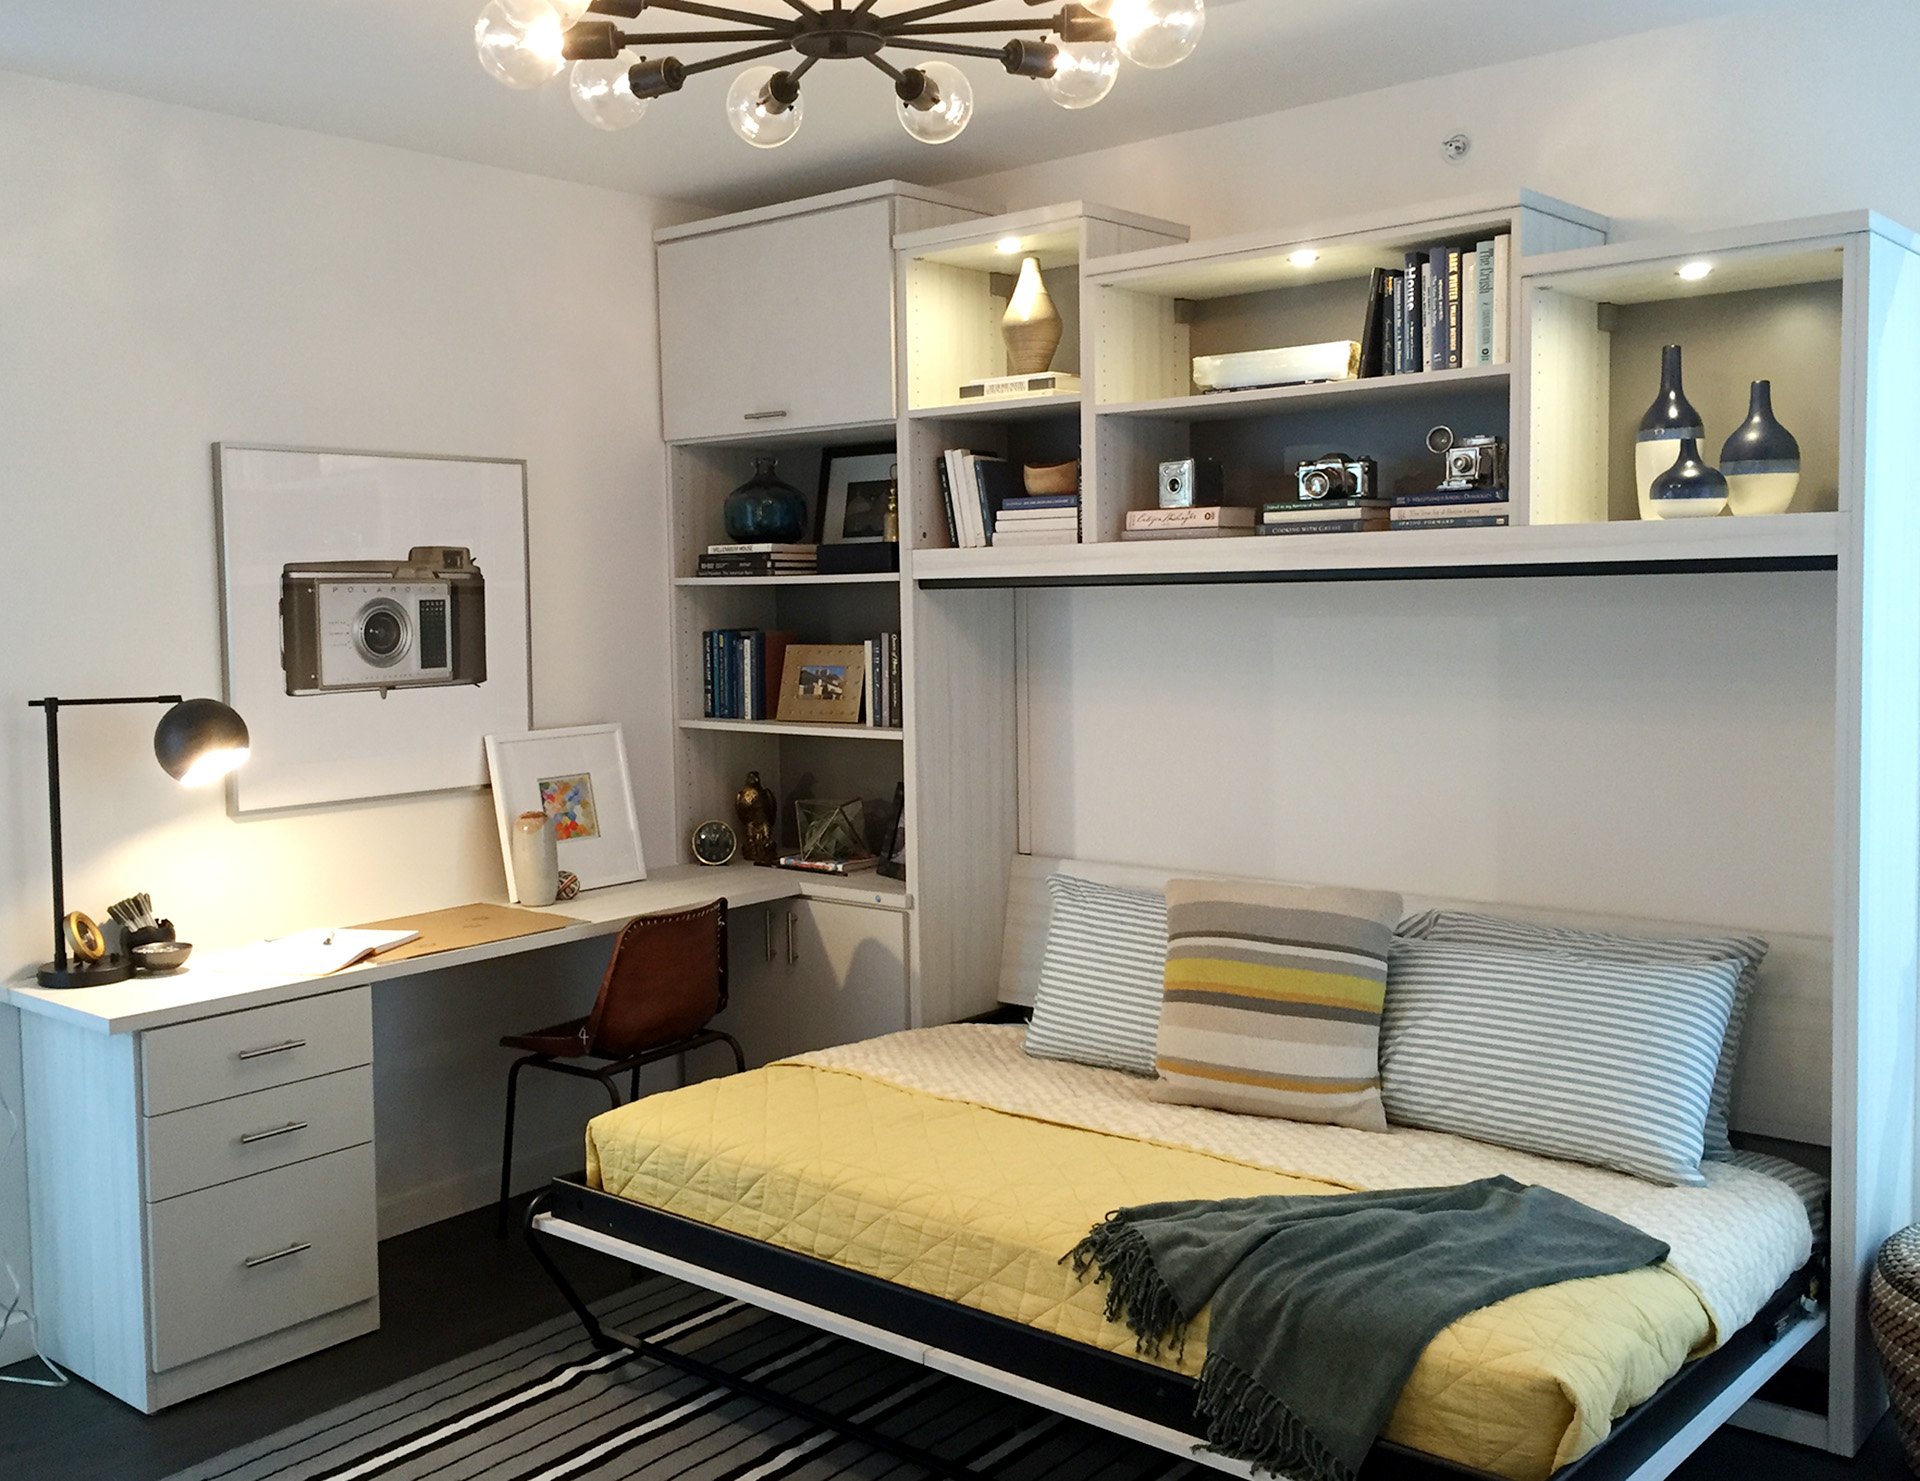 Giường Murphy được tích hợp với kệ đồ là thiết kế hiện rất được ưa chuộng bởi tính gọn gàng, đa nhiệm của nó.